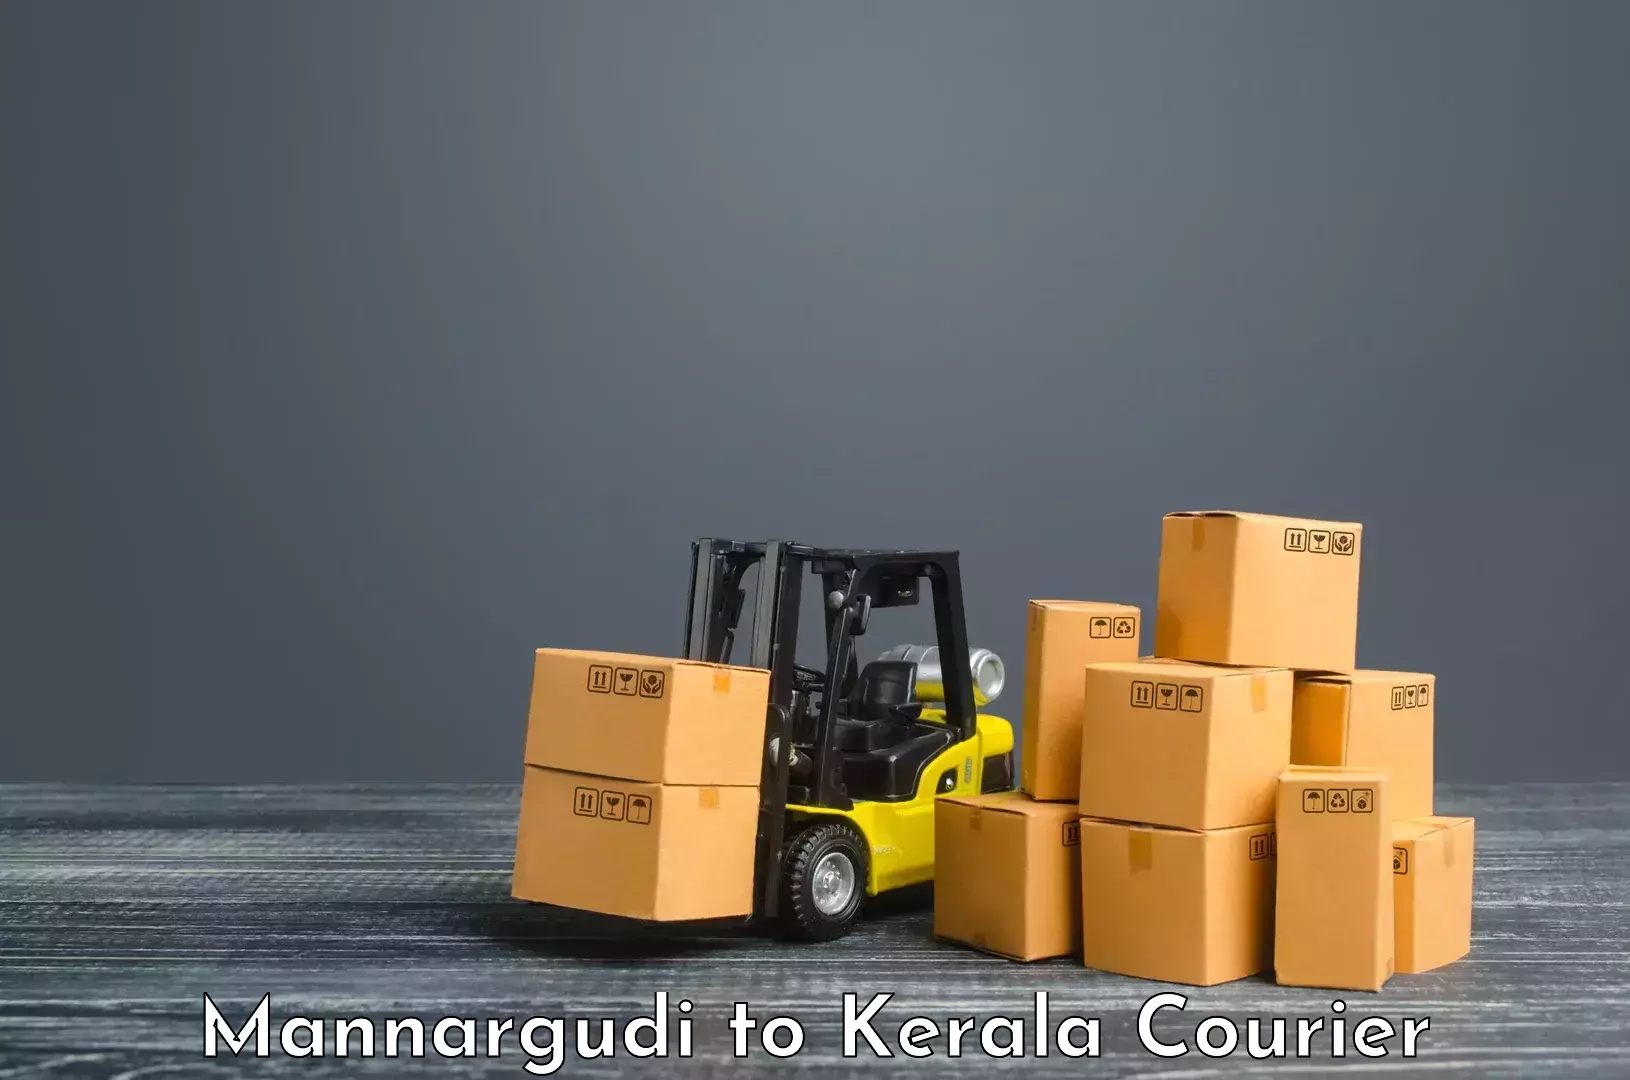 Comprehensive logistics Mannargudi to Kerala